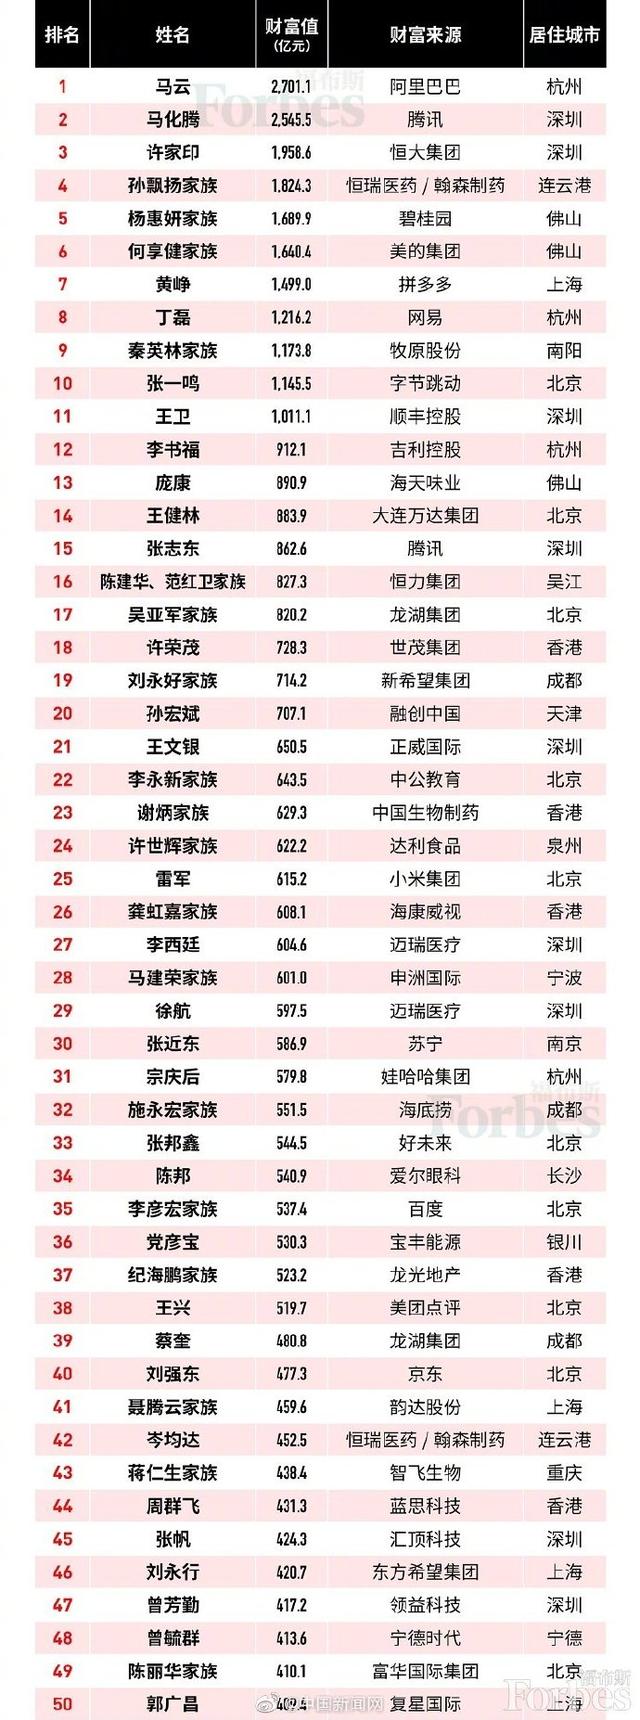 中国福布斯富豪榜出炉第一第二都姓马另有60位新人上榜